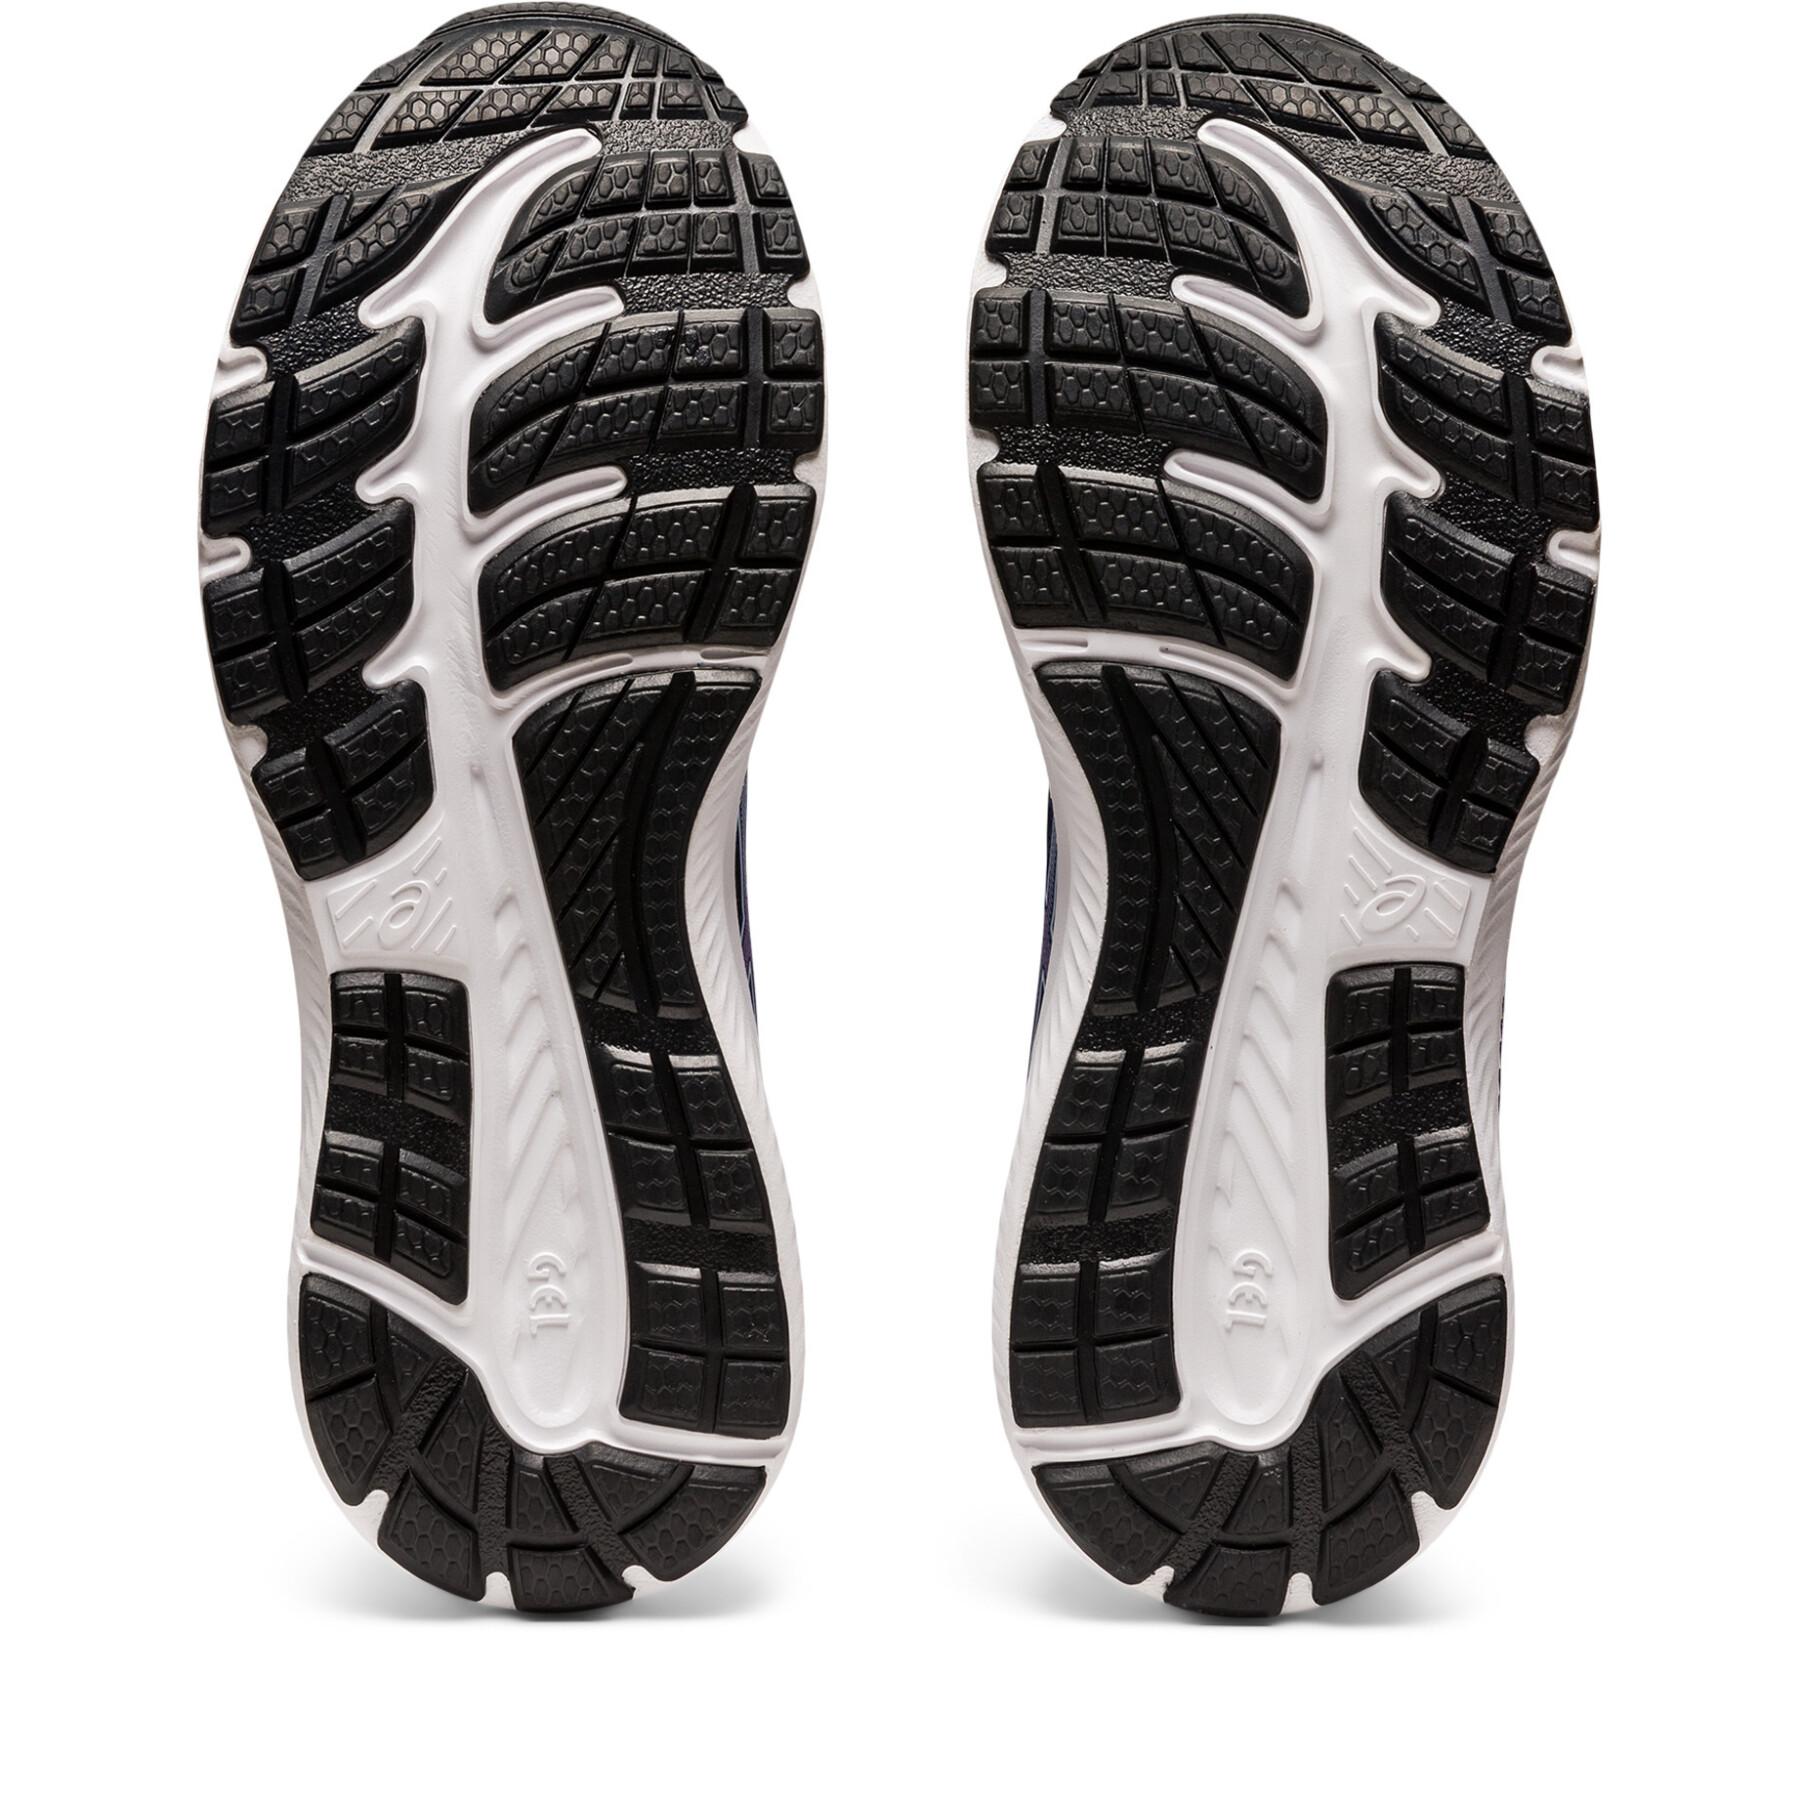 Women's running shoes Asics Gel-Contend 8